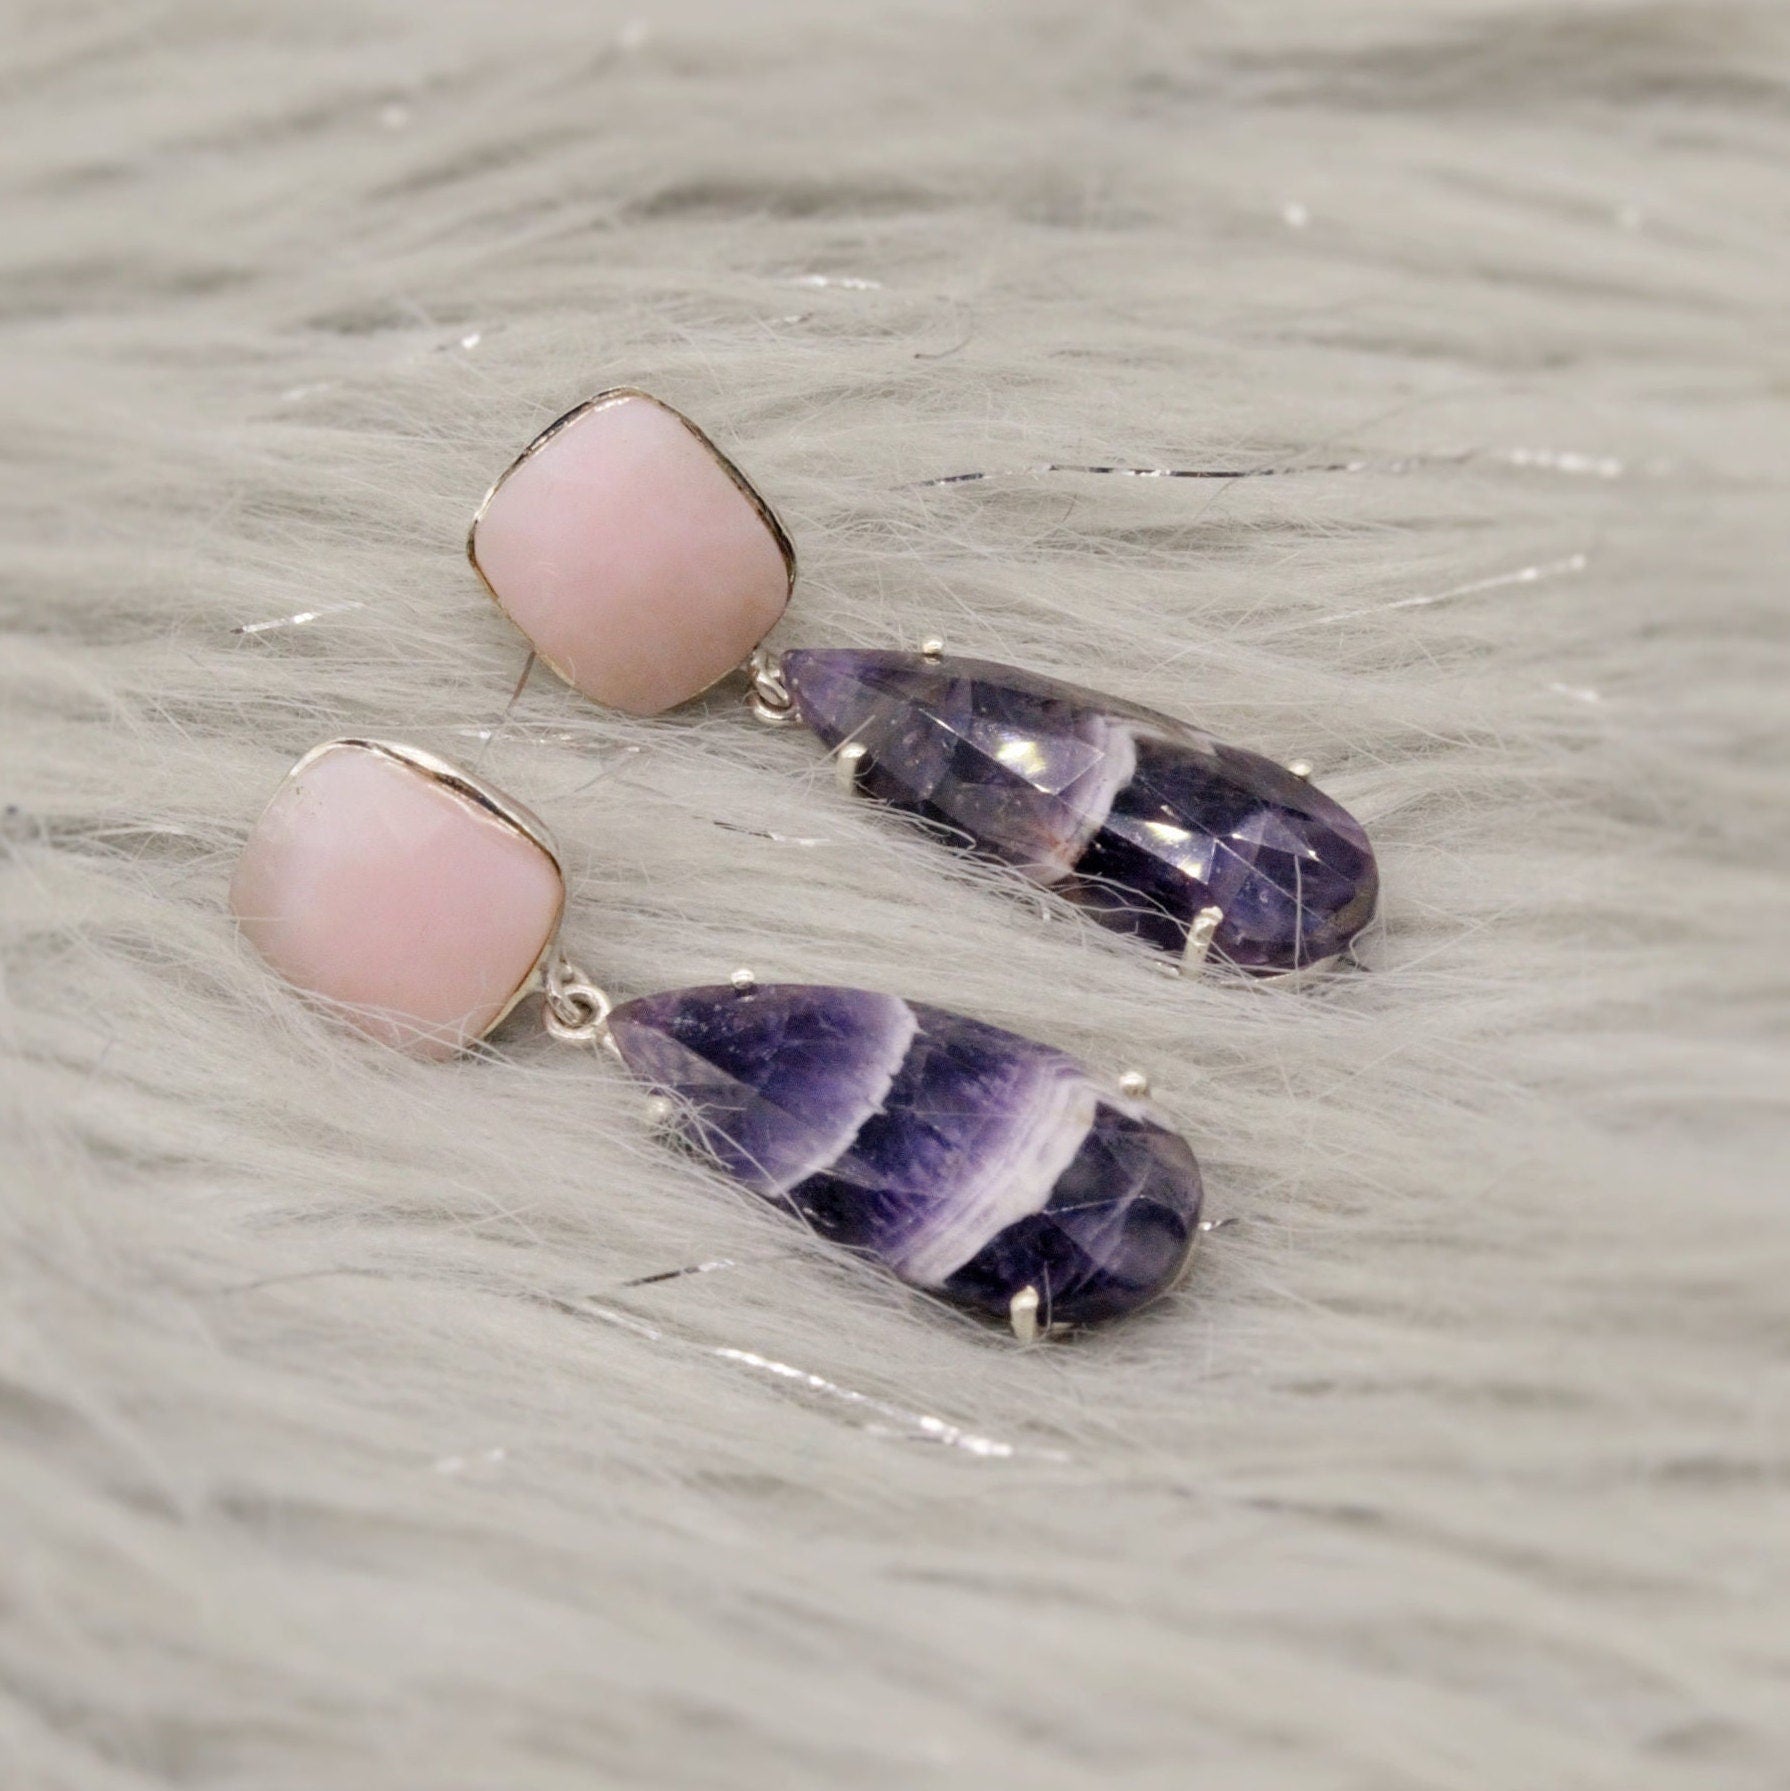 Pink Opal, Amethyst Silver Earrings, February Birthstone Amethyst Jewelry, Opal Dangle Earrings, Gifts For Her, Blue Peacock Earrings